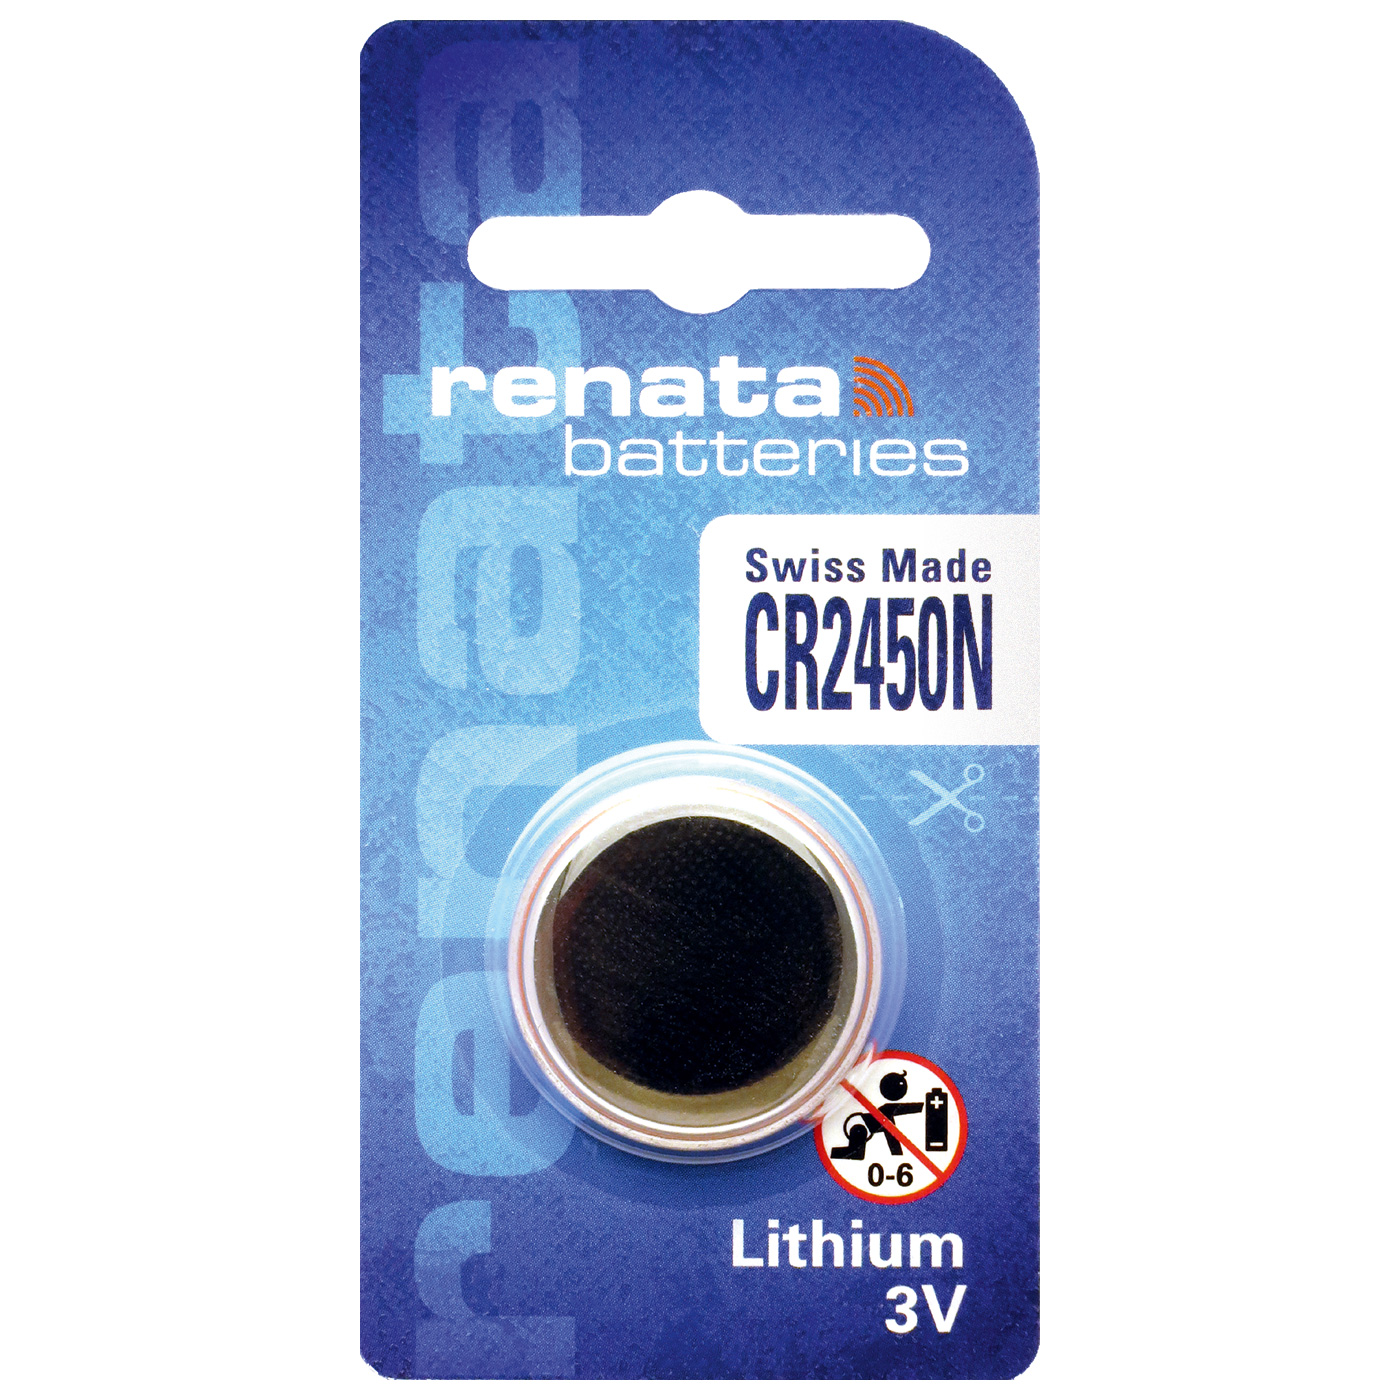 Renata CR 2450N lithium